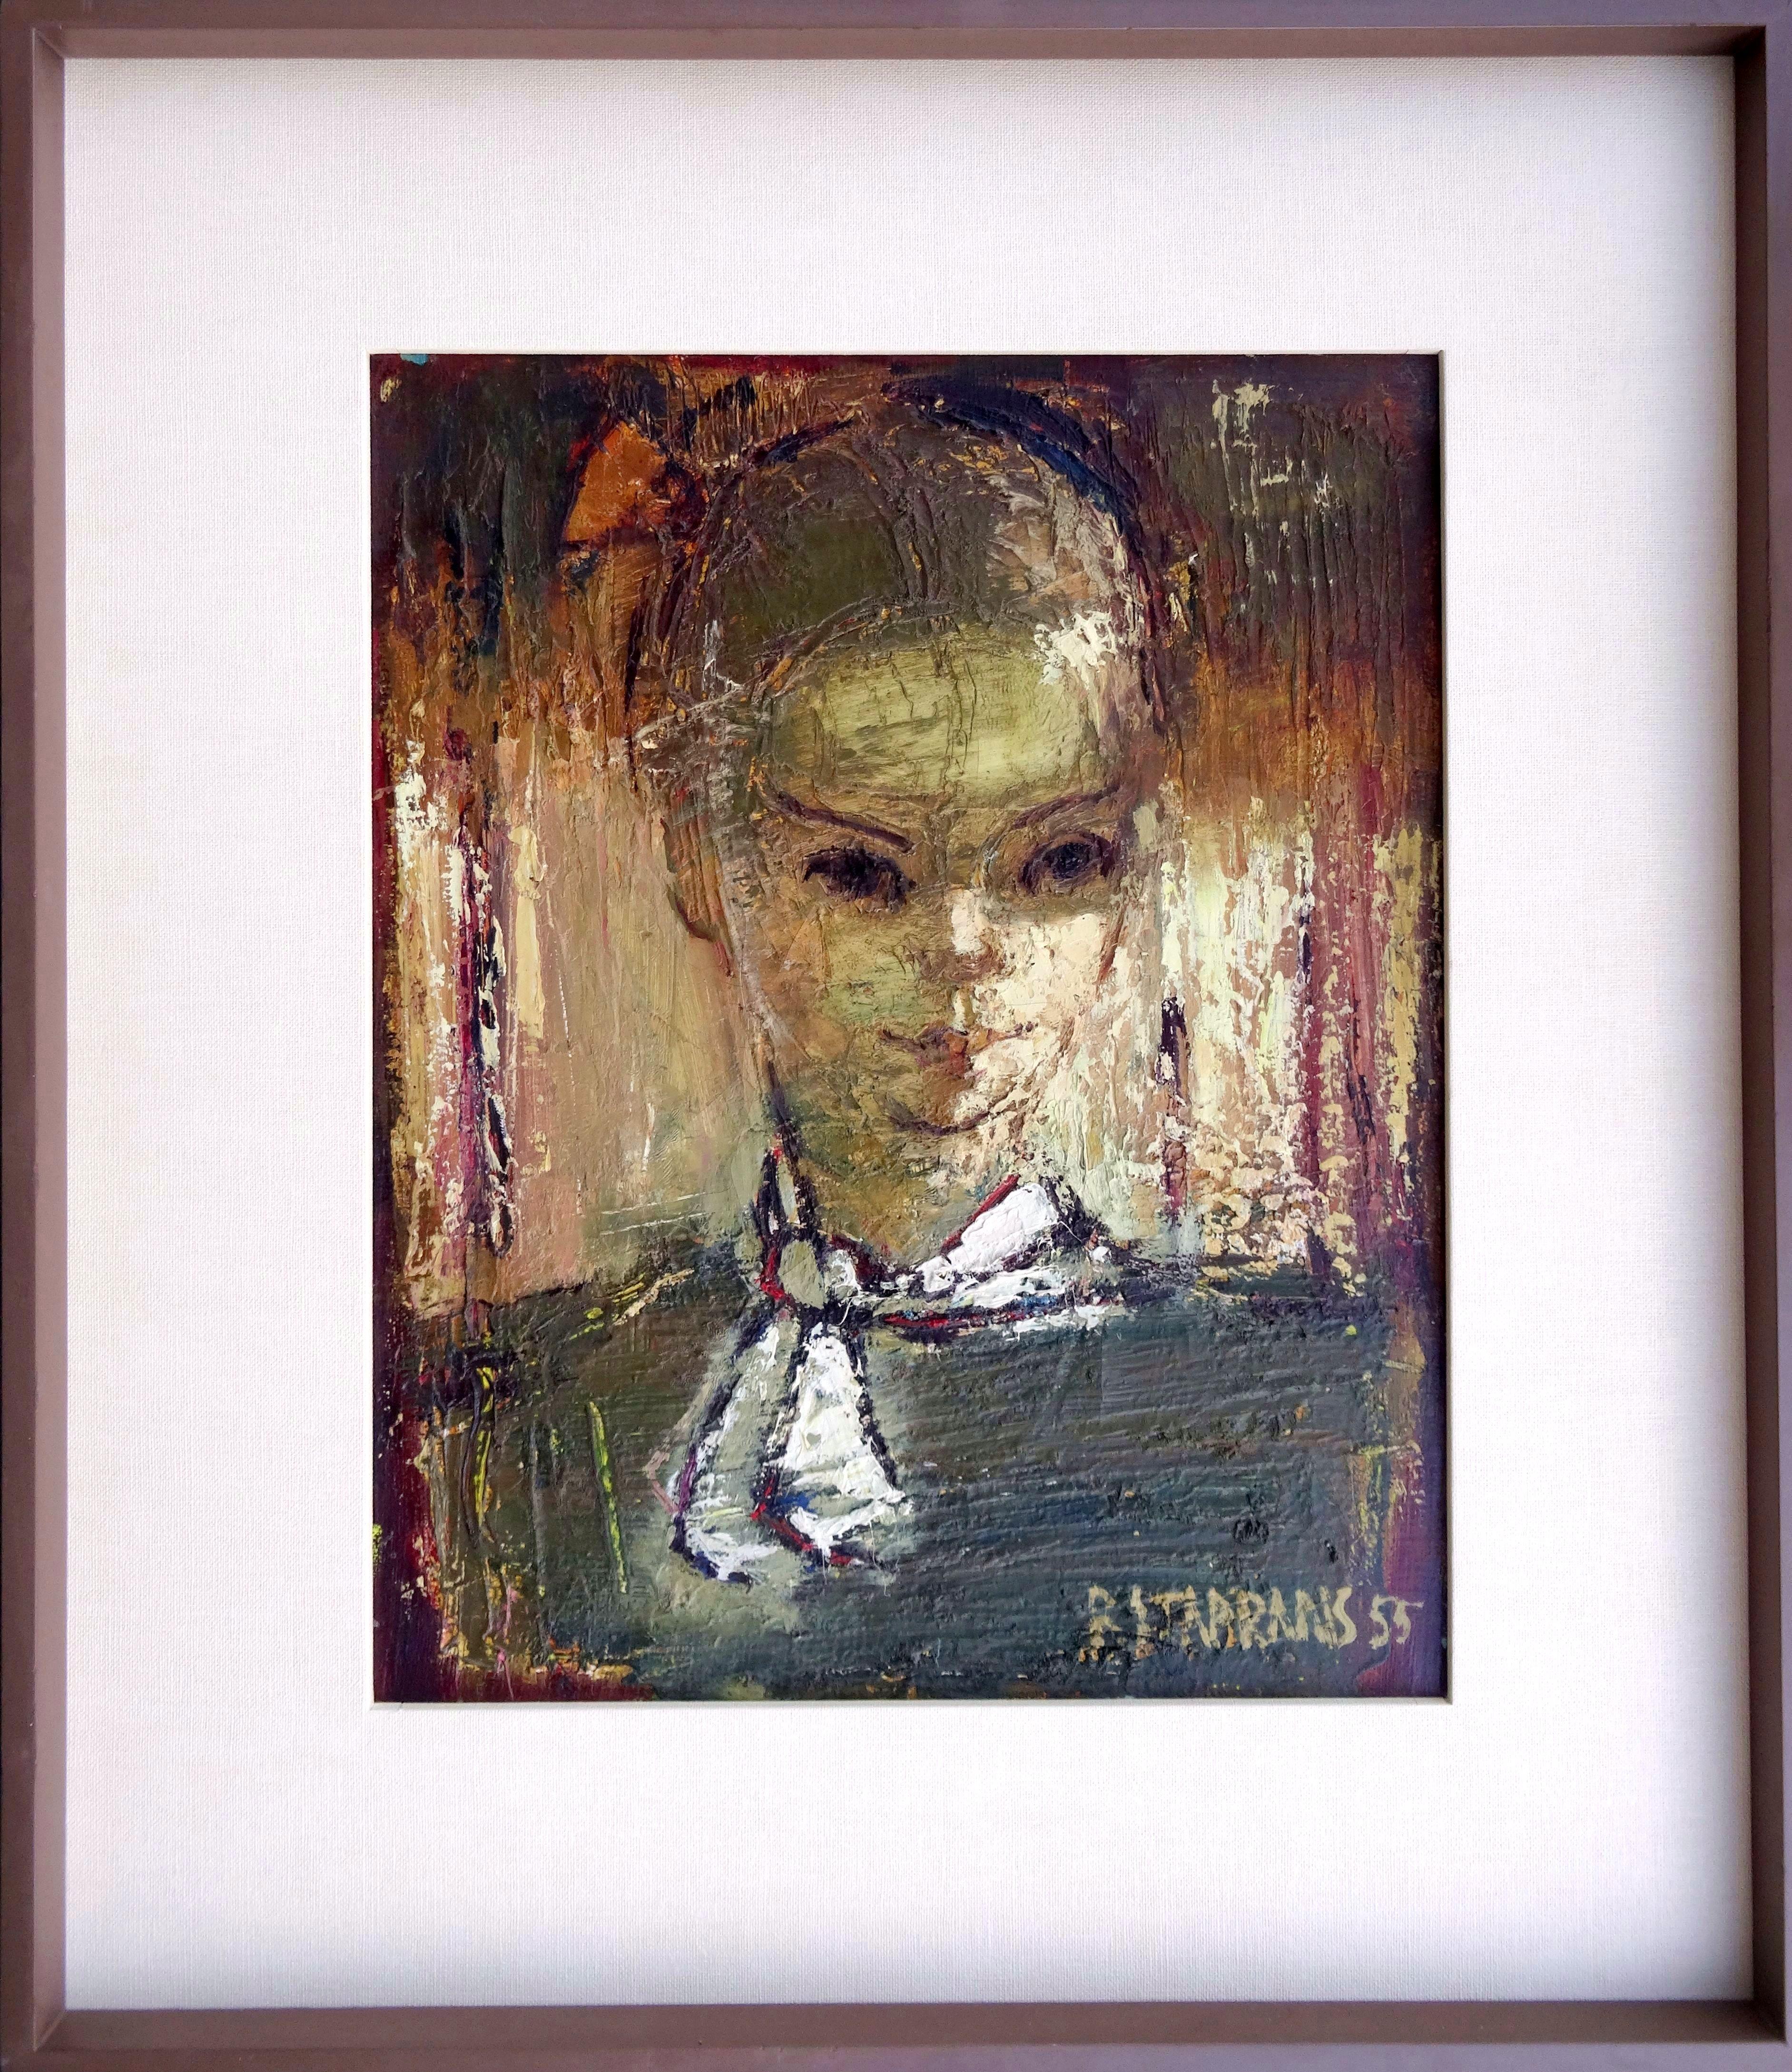 Frauenporträt. 1955, Öl auf Leinwand, 50.8 x 40.6 cm (Expressionismus), Painting, von Raimonds Staprаns 